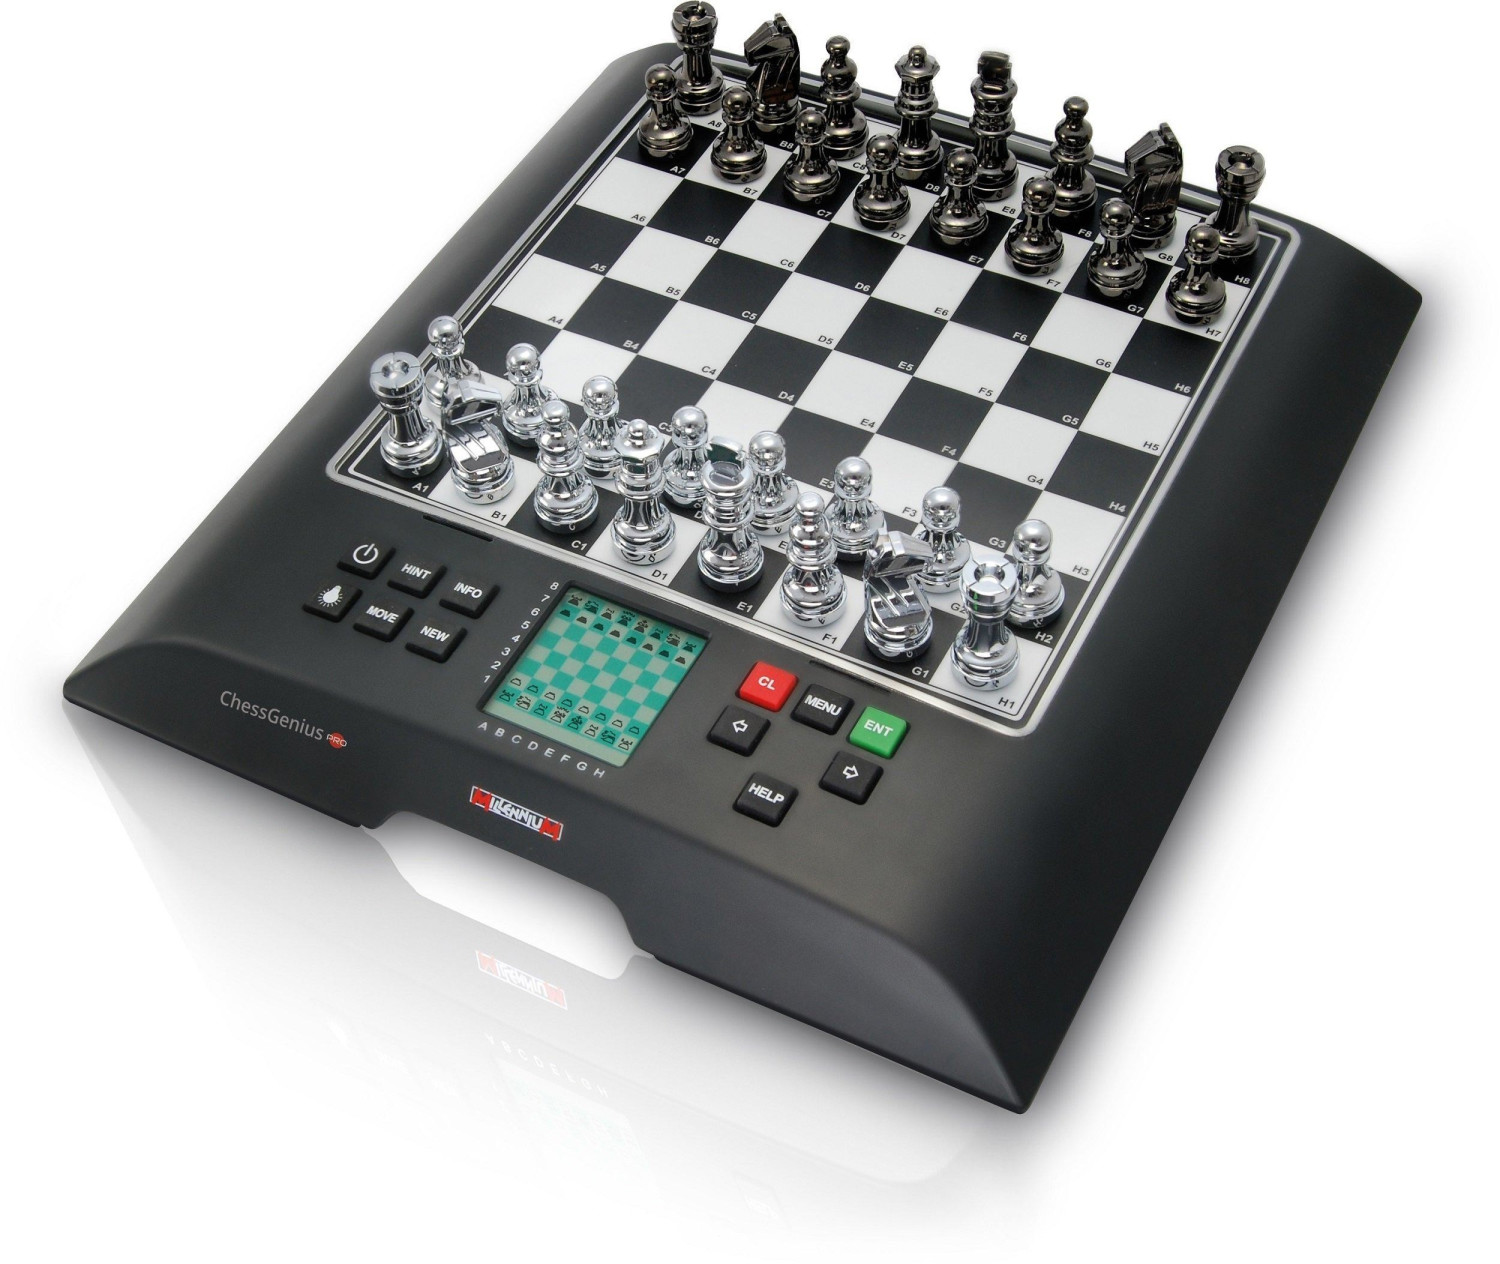 💥 Meilleurs jeux d'échecs 2024 - guide d'achat et comparatif